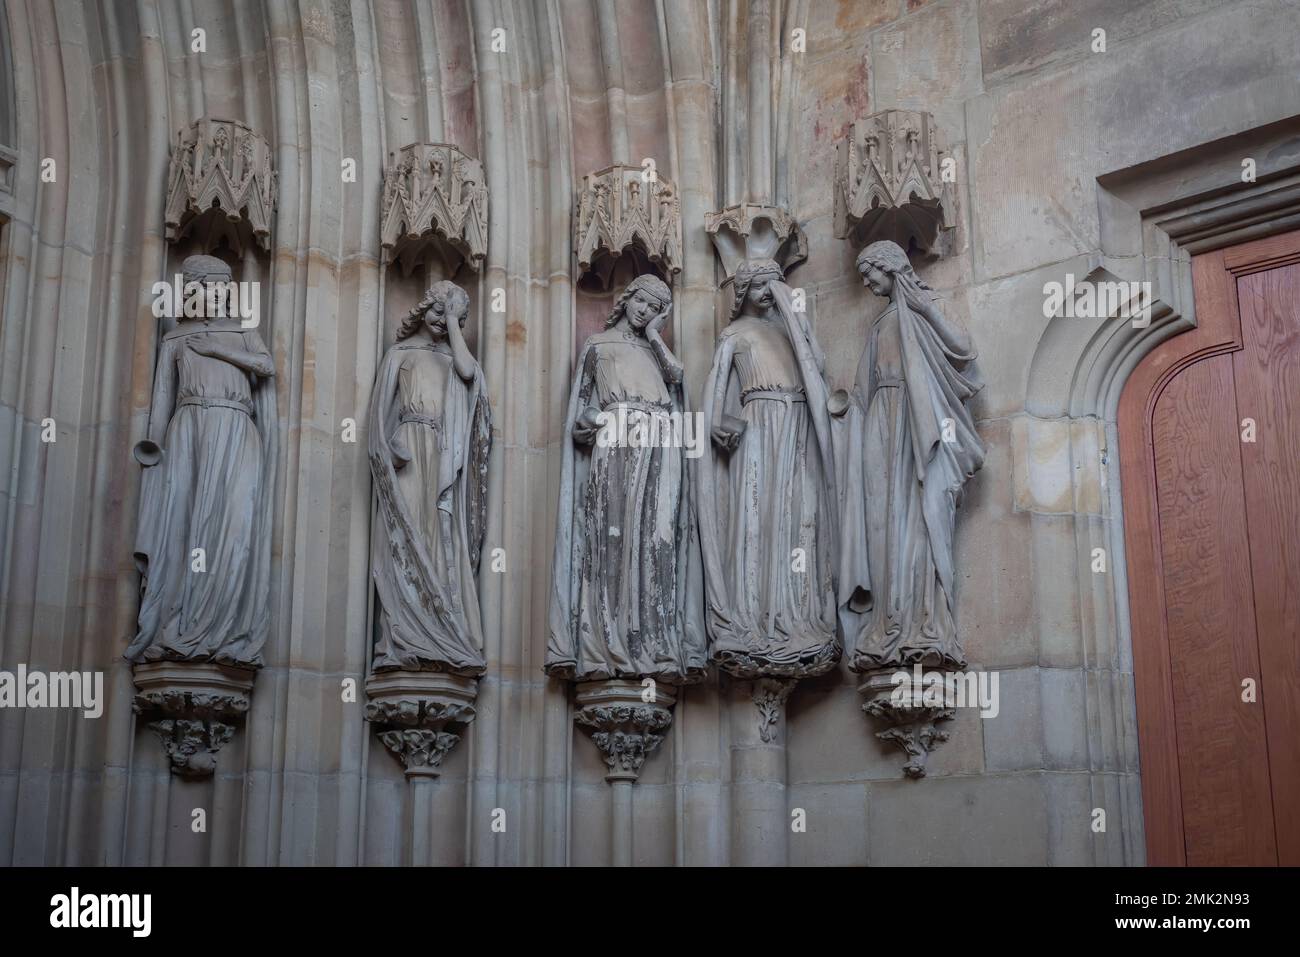 Fünf törichte Jungfrauen zeigen ihre Trauerskulpturen im Inneren des Magdeburger Doms - Magdeburg Stockfoto